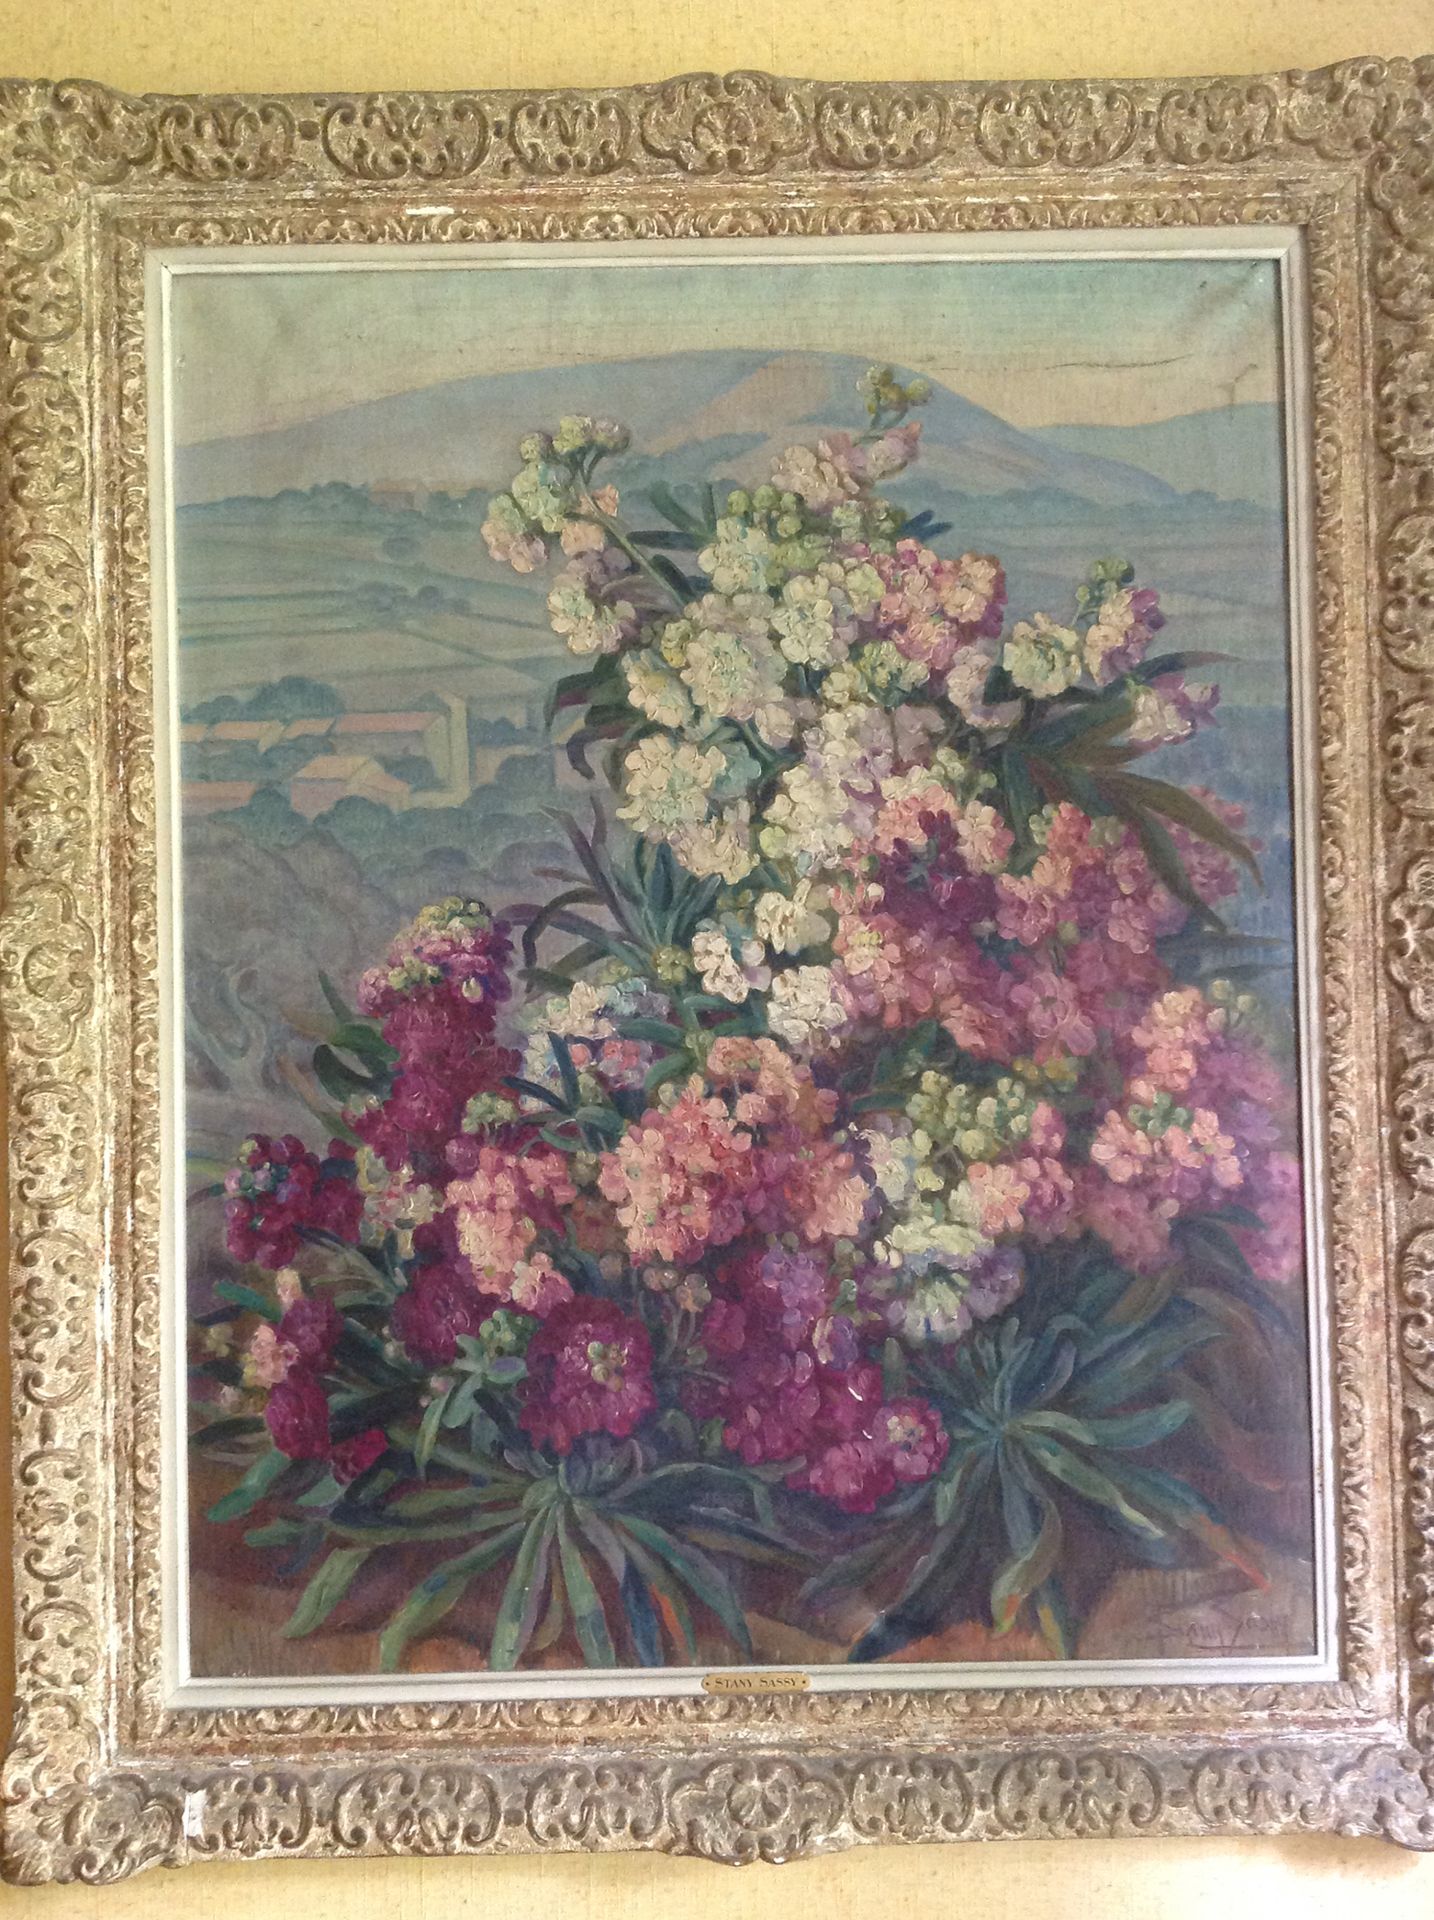 Sany SASSY (XIXème-XXème siècle) 风景中的花束
布面油画，右下方签名
高80厘米-宽65厘米